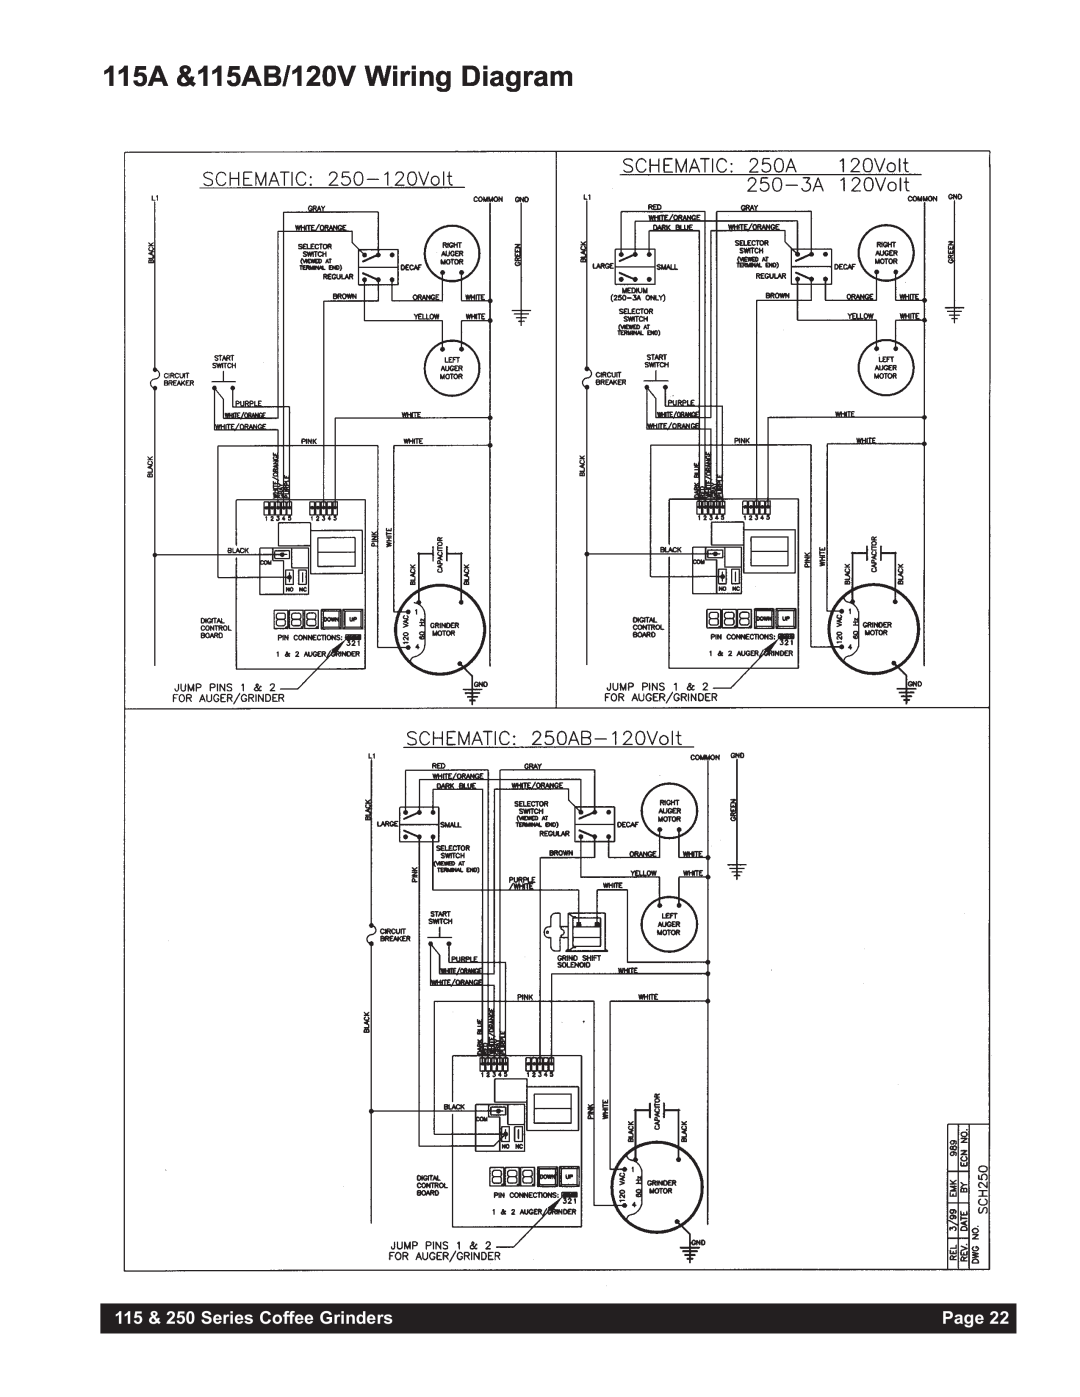 Grindmaster 250AB, 250RH-2, 250RH-3 115A &115AB/120V Wiring Diagram, 115 & 250 Series Coffee Grinders, Page 